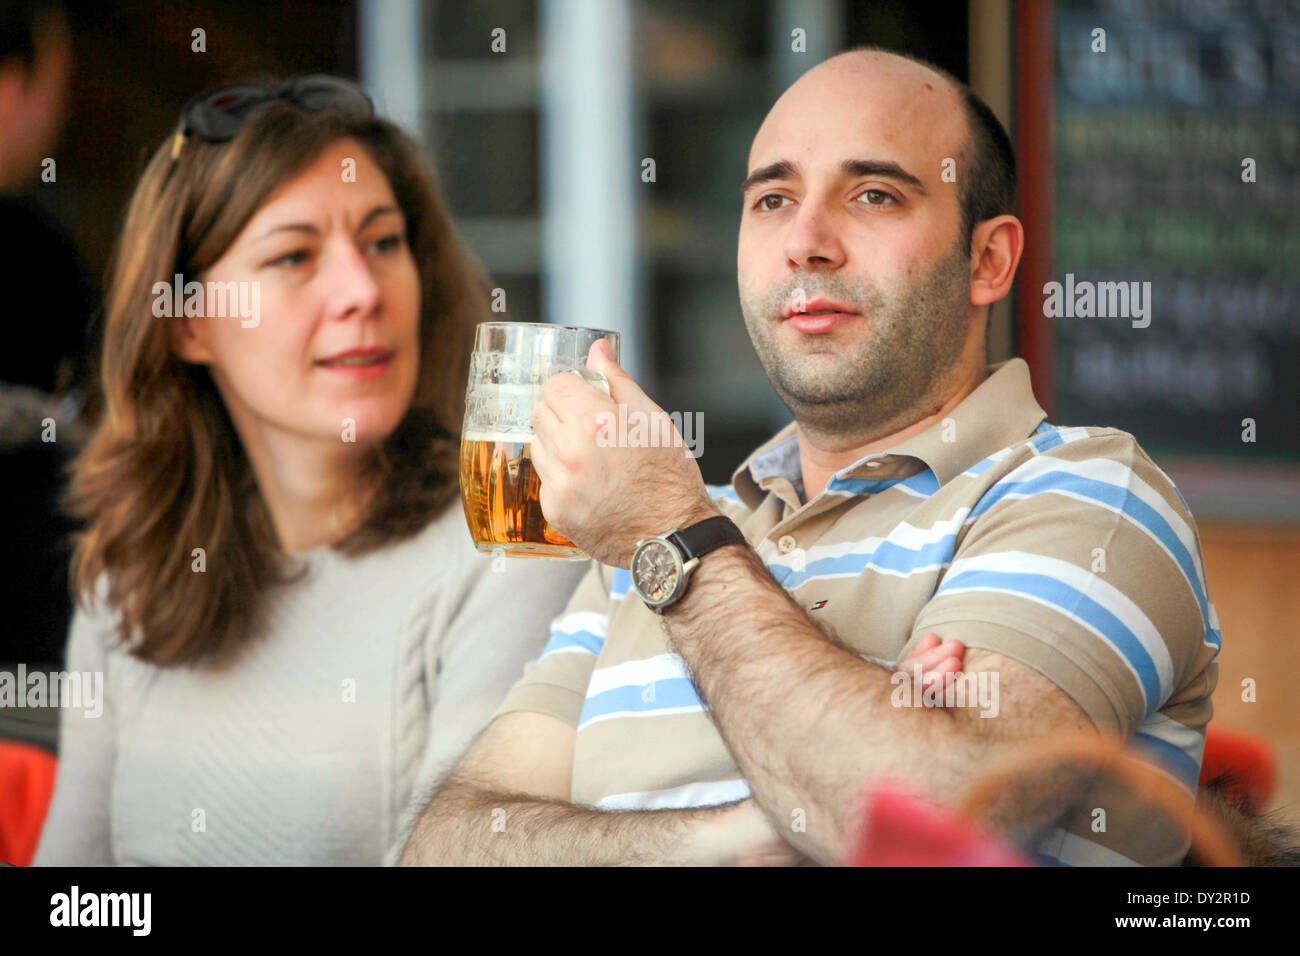 Tourists, man drinking Czech beer, Prague Czech Republic Stock Photo